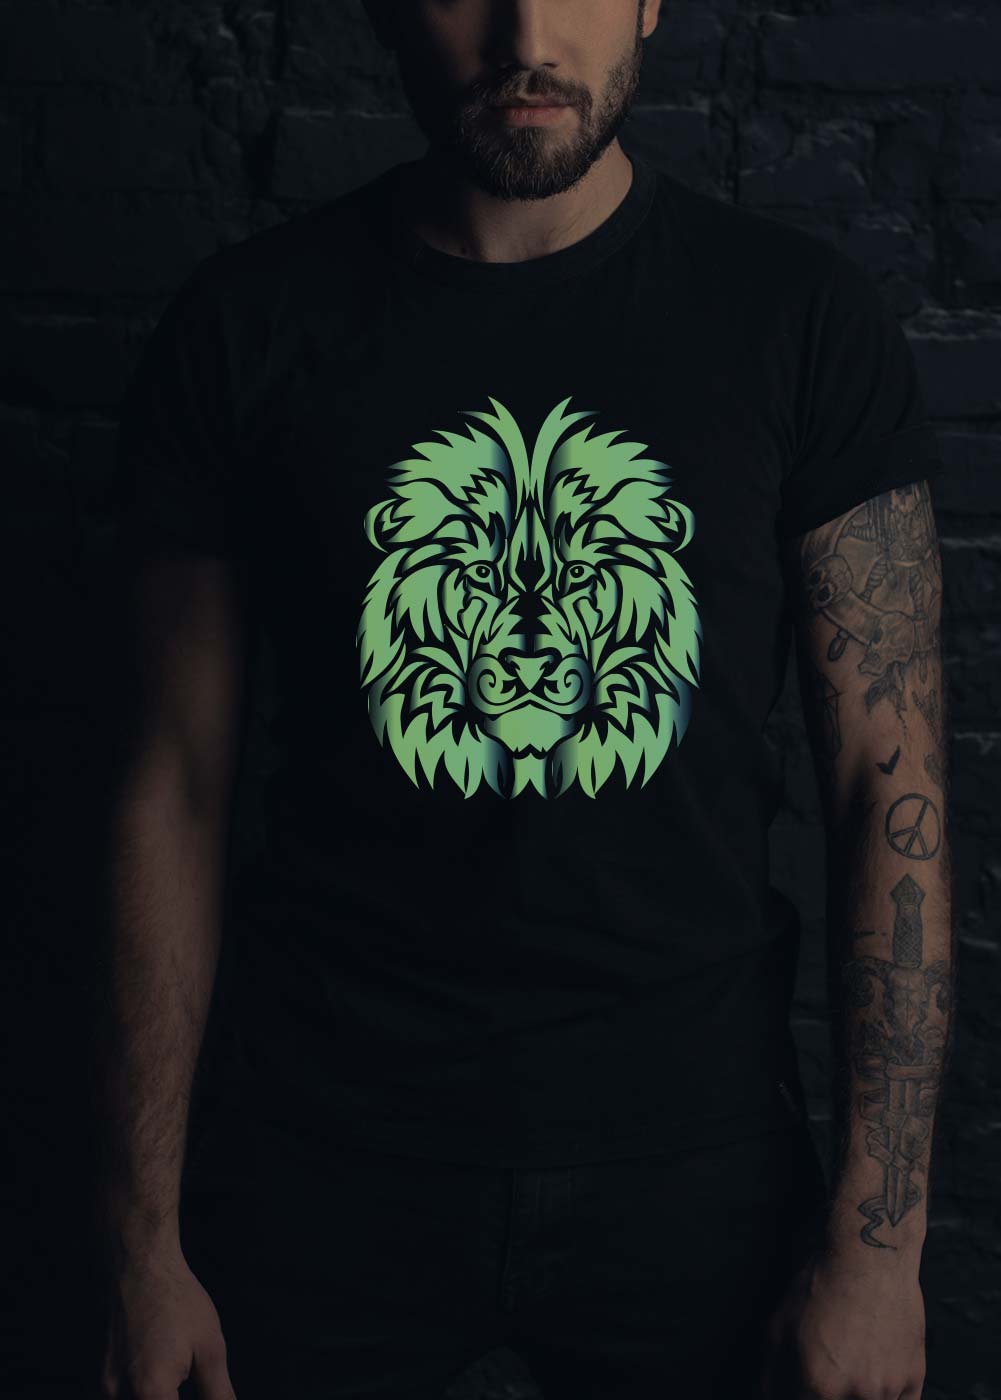 Lion glowing t shirt